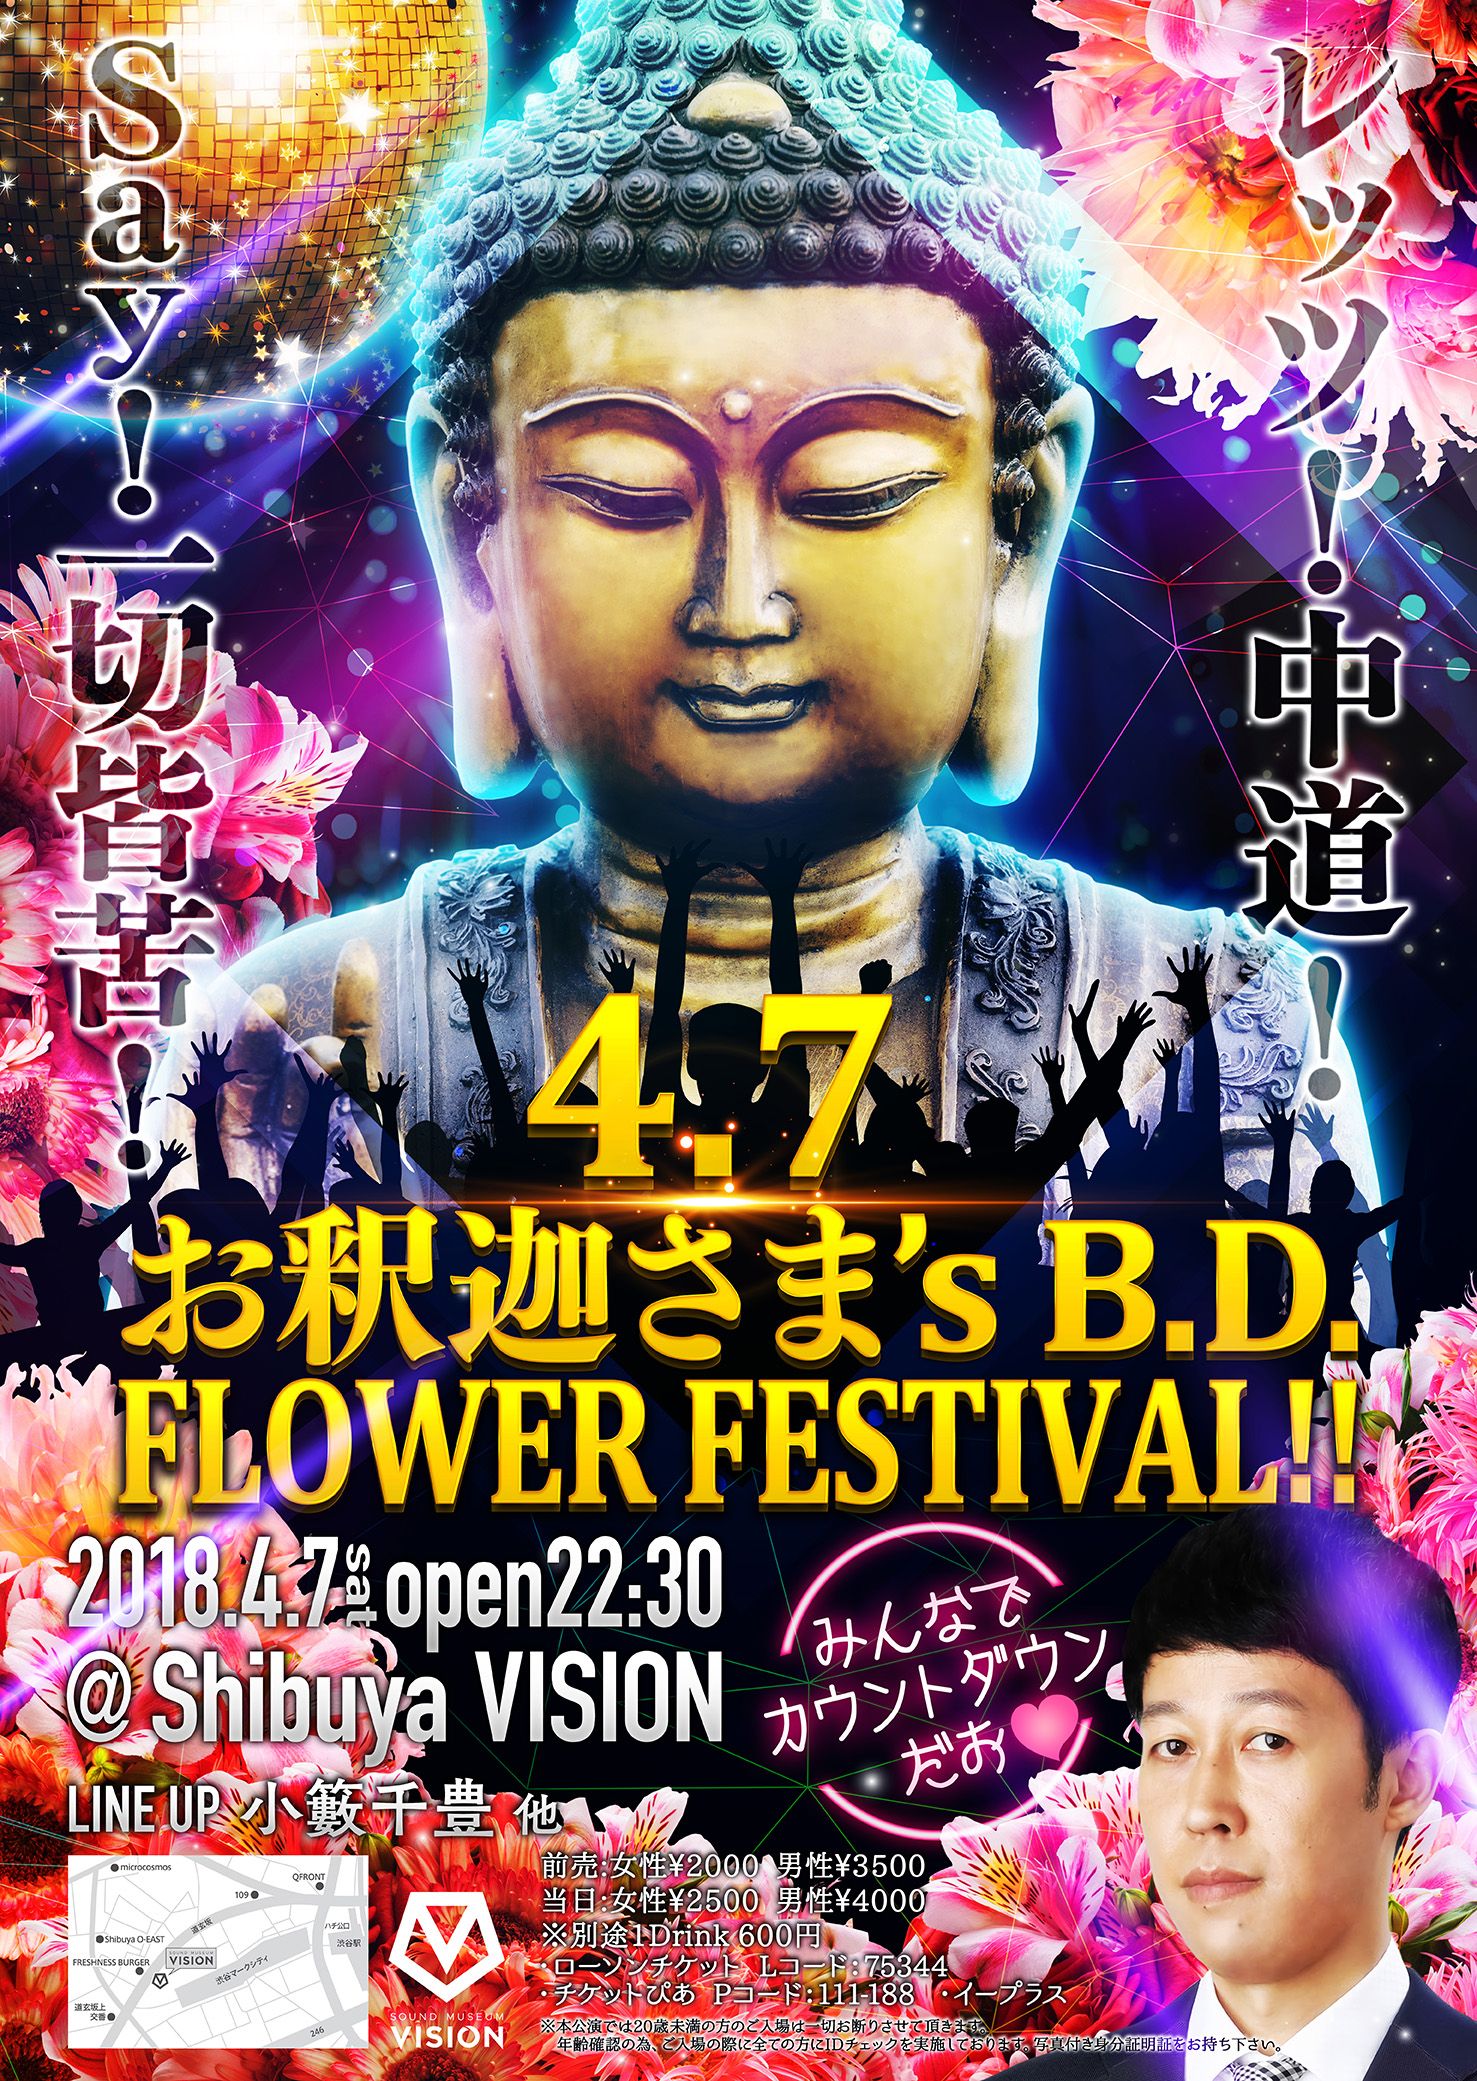 4.7 お釈迦さま's B.D.FLOWER FESTIVAL!! 〜みんなでカウントダウンだお❤️〜